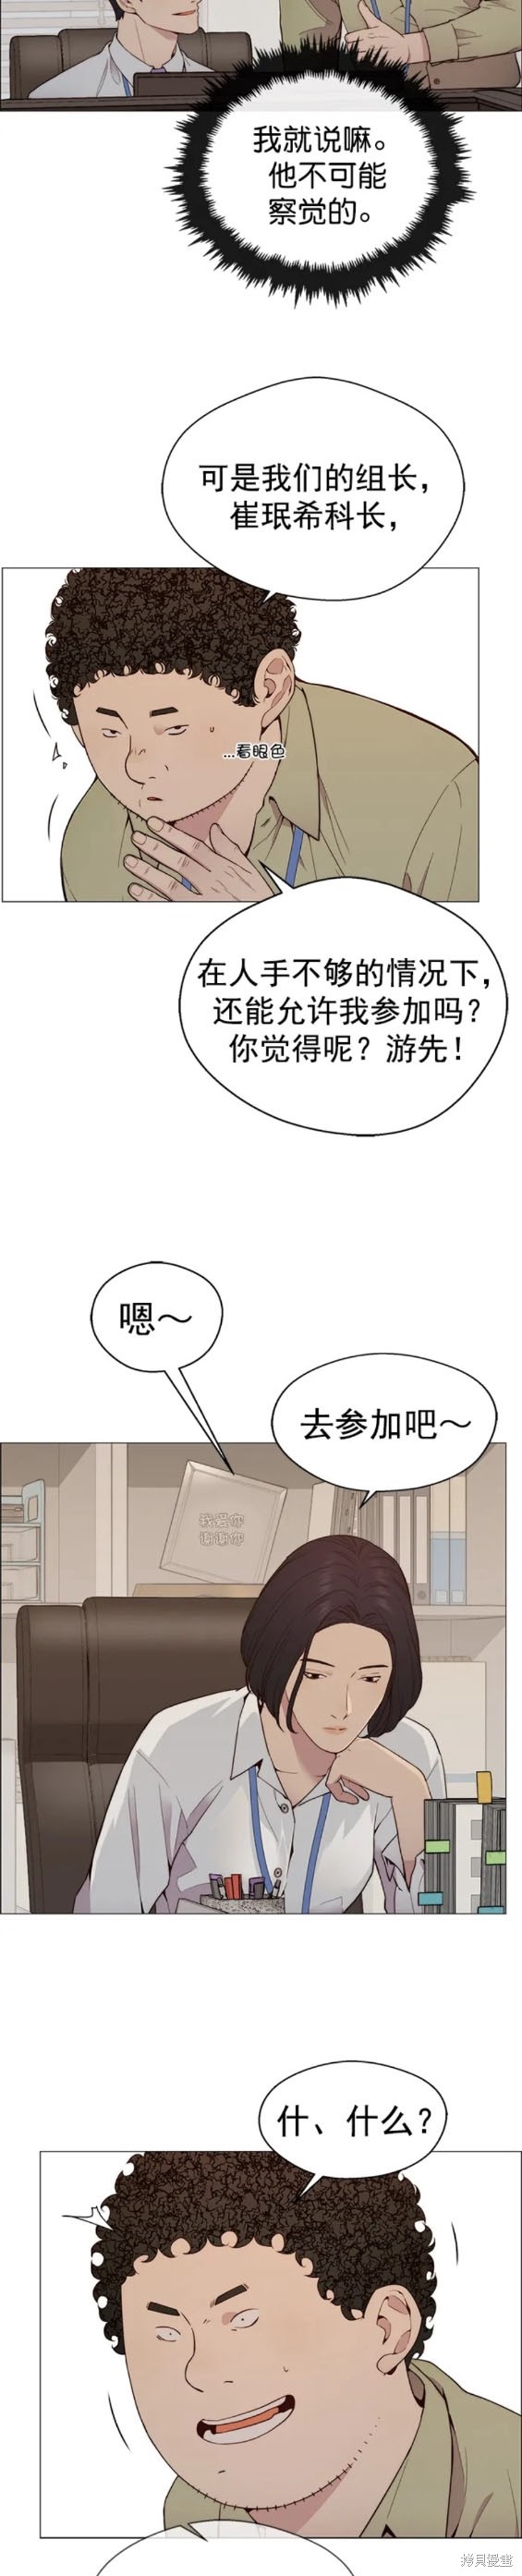 男子汉漫画,第145话11图